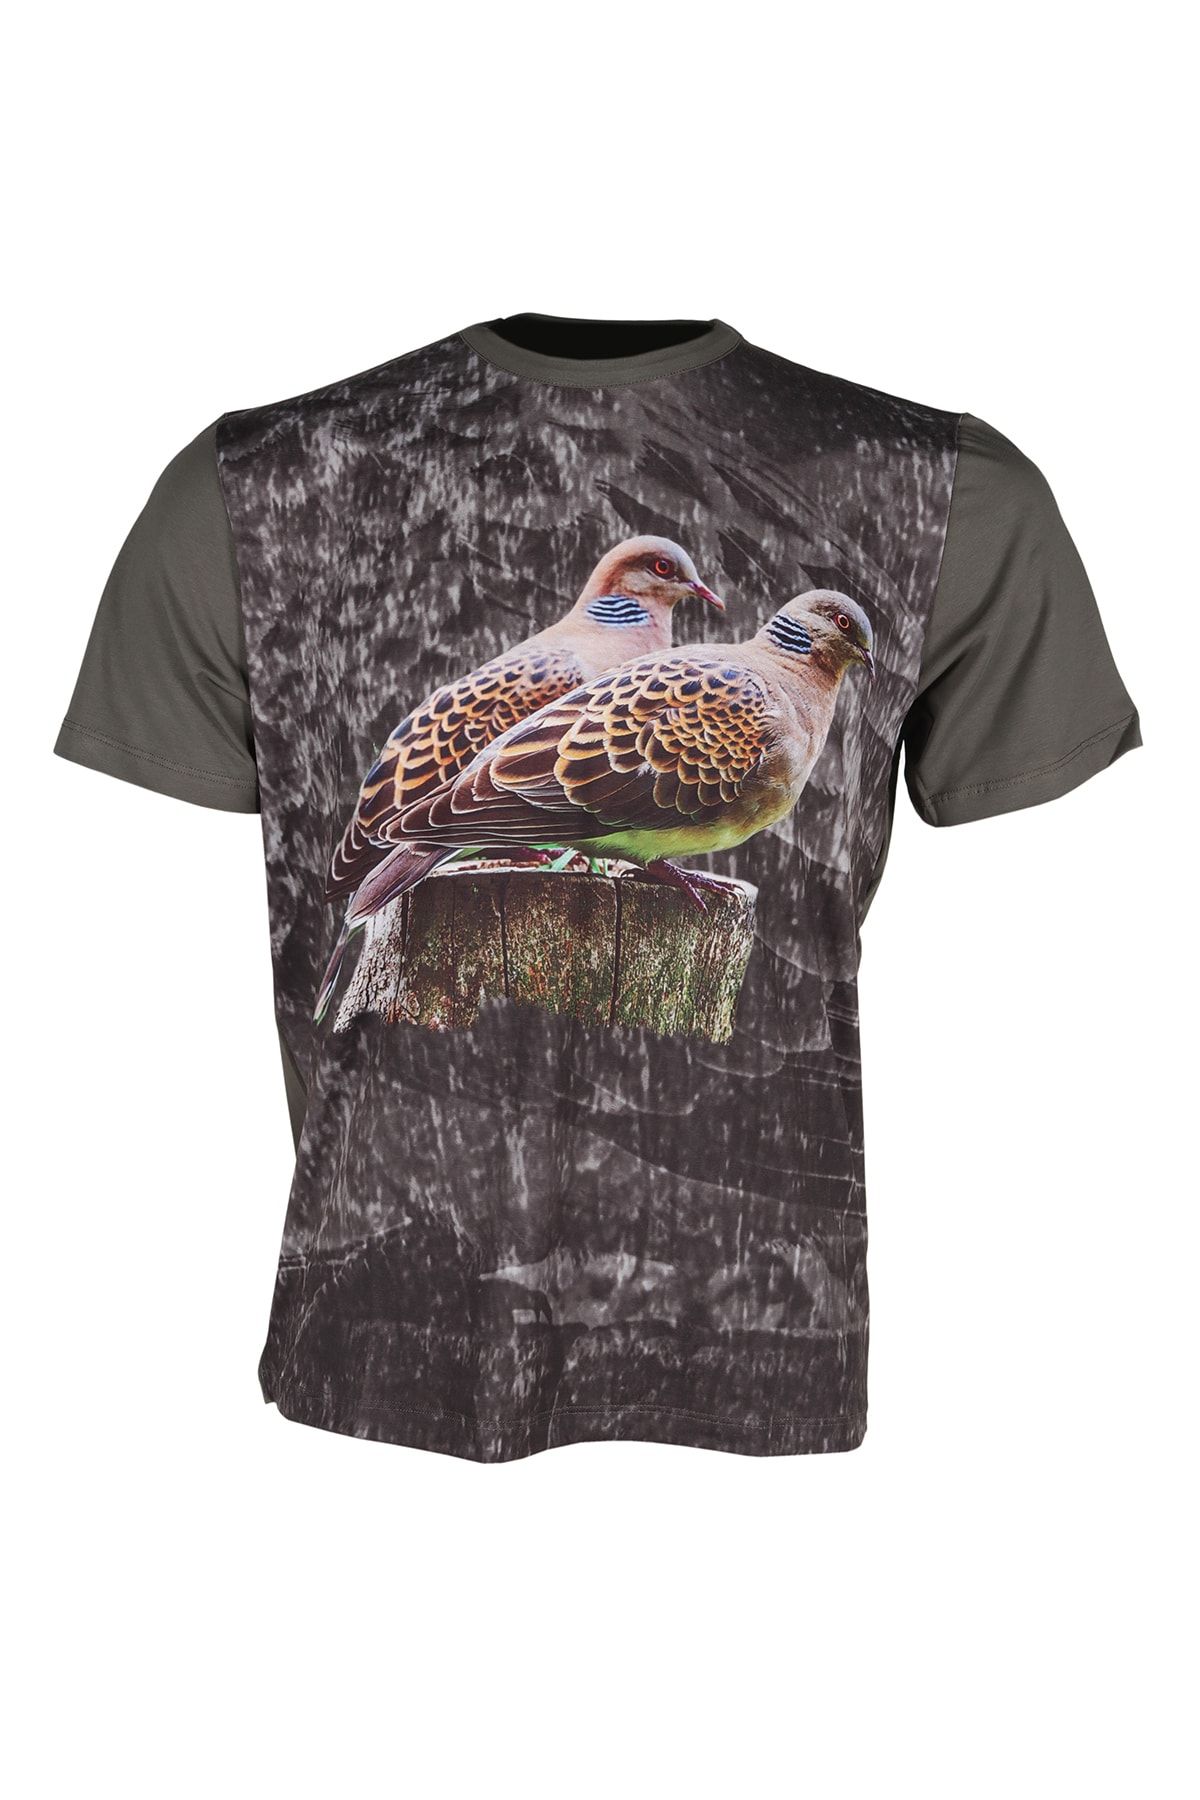 Dark Forest Sıfır Yaka Kısa Kol Haki-üveyk Desenli Avcı Ve Outdoor T-shirt